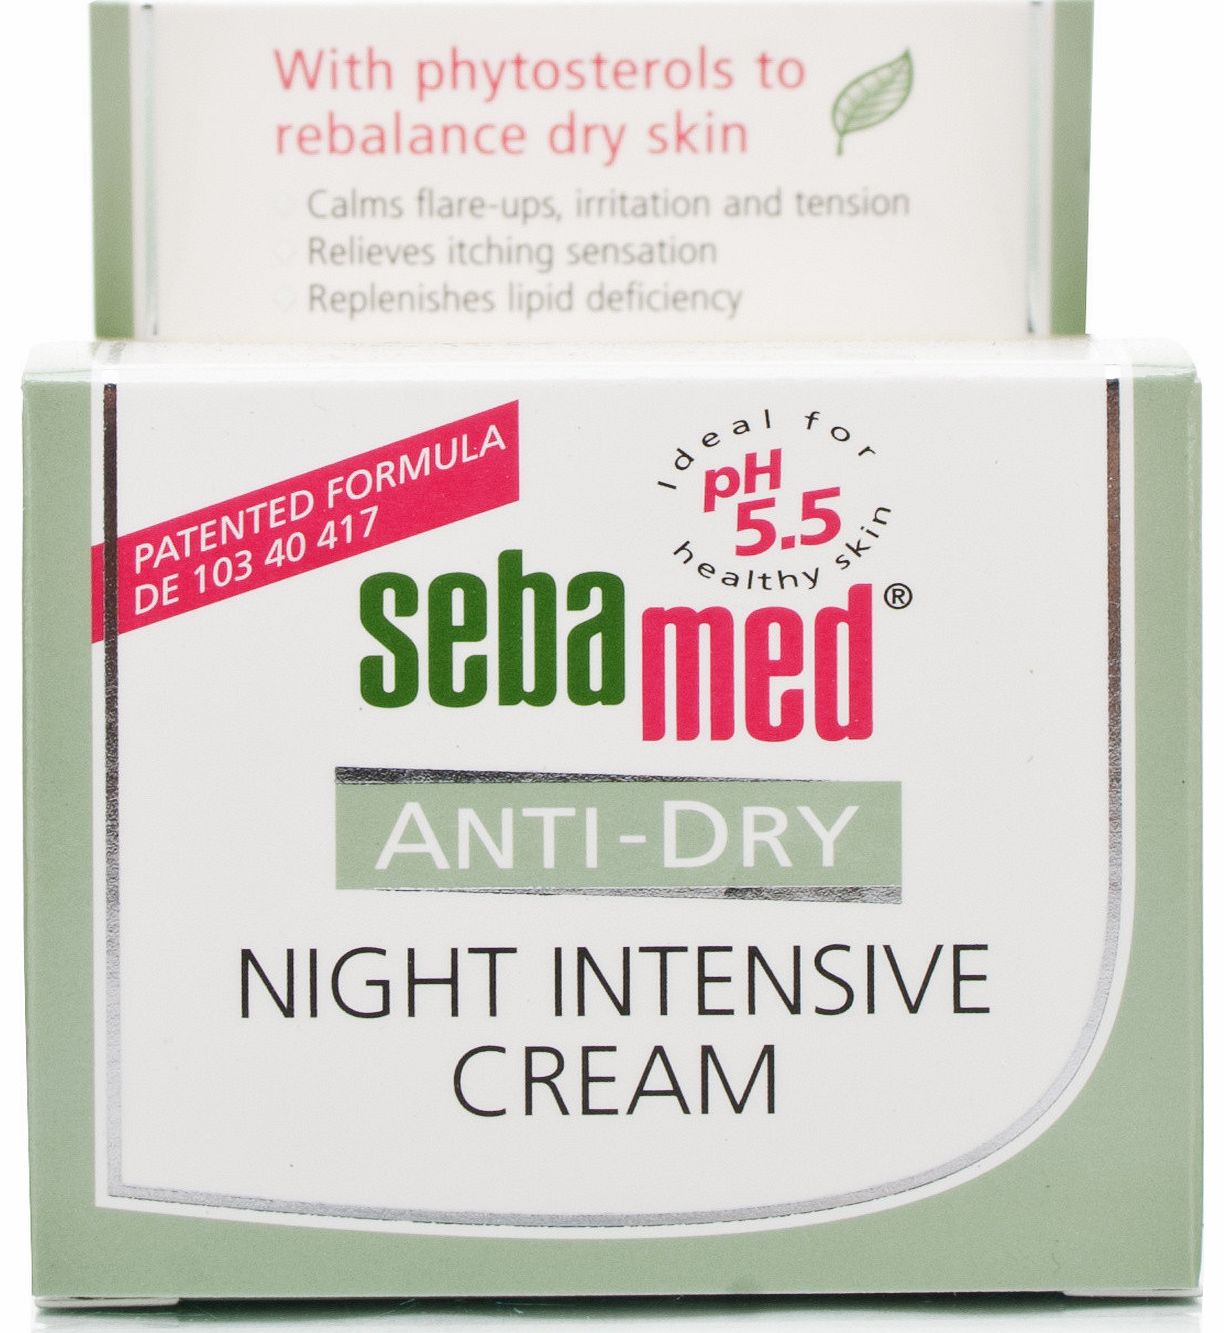 Anti-Dry Night Intensive Cream